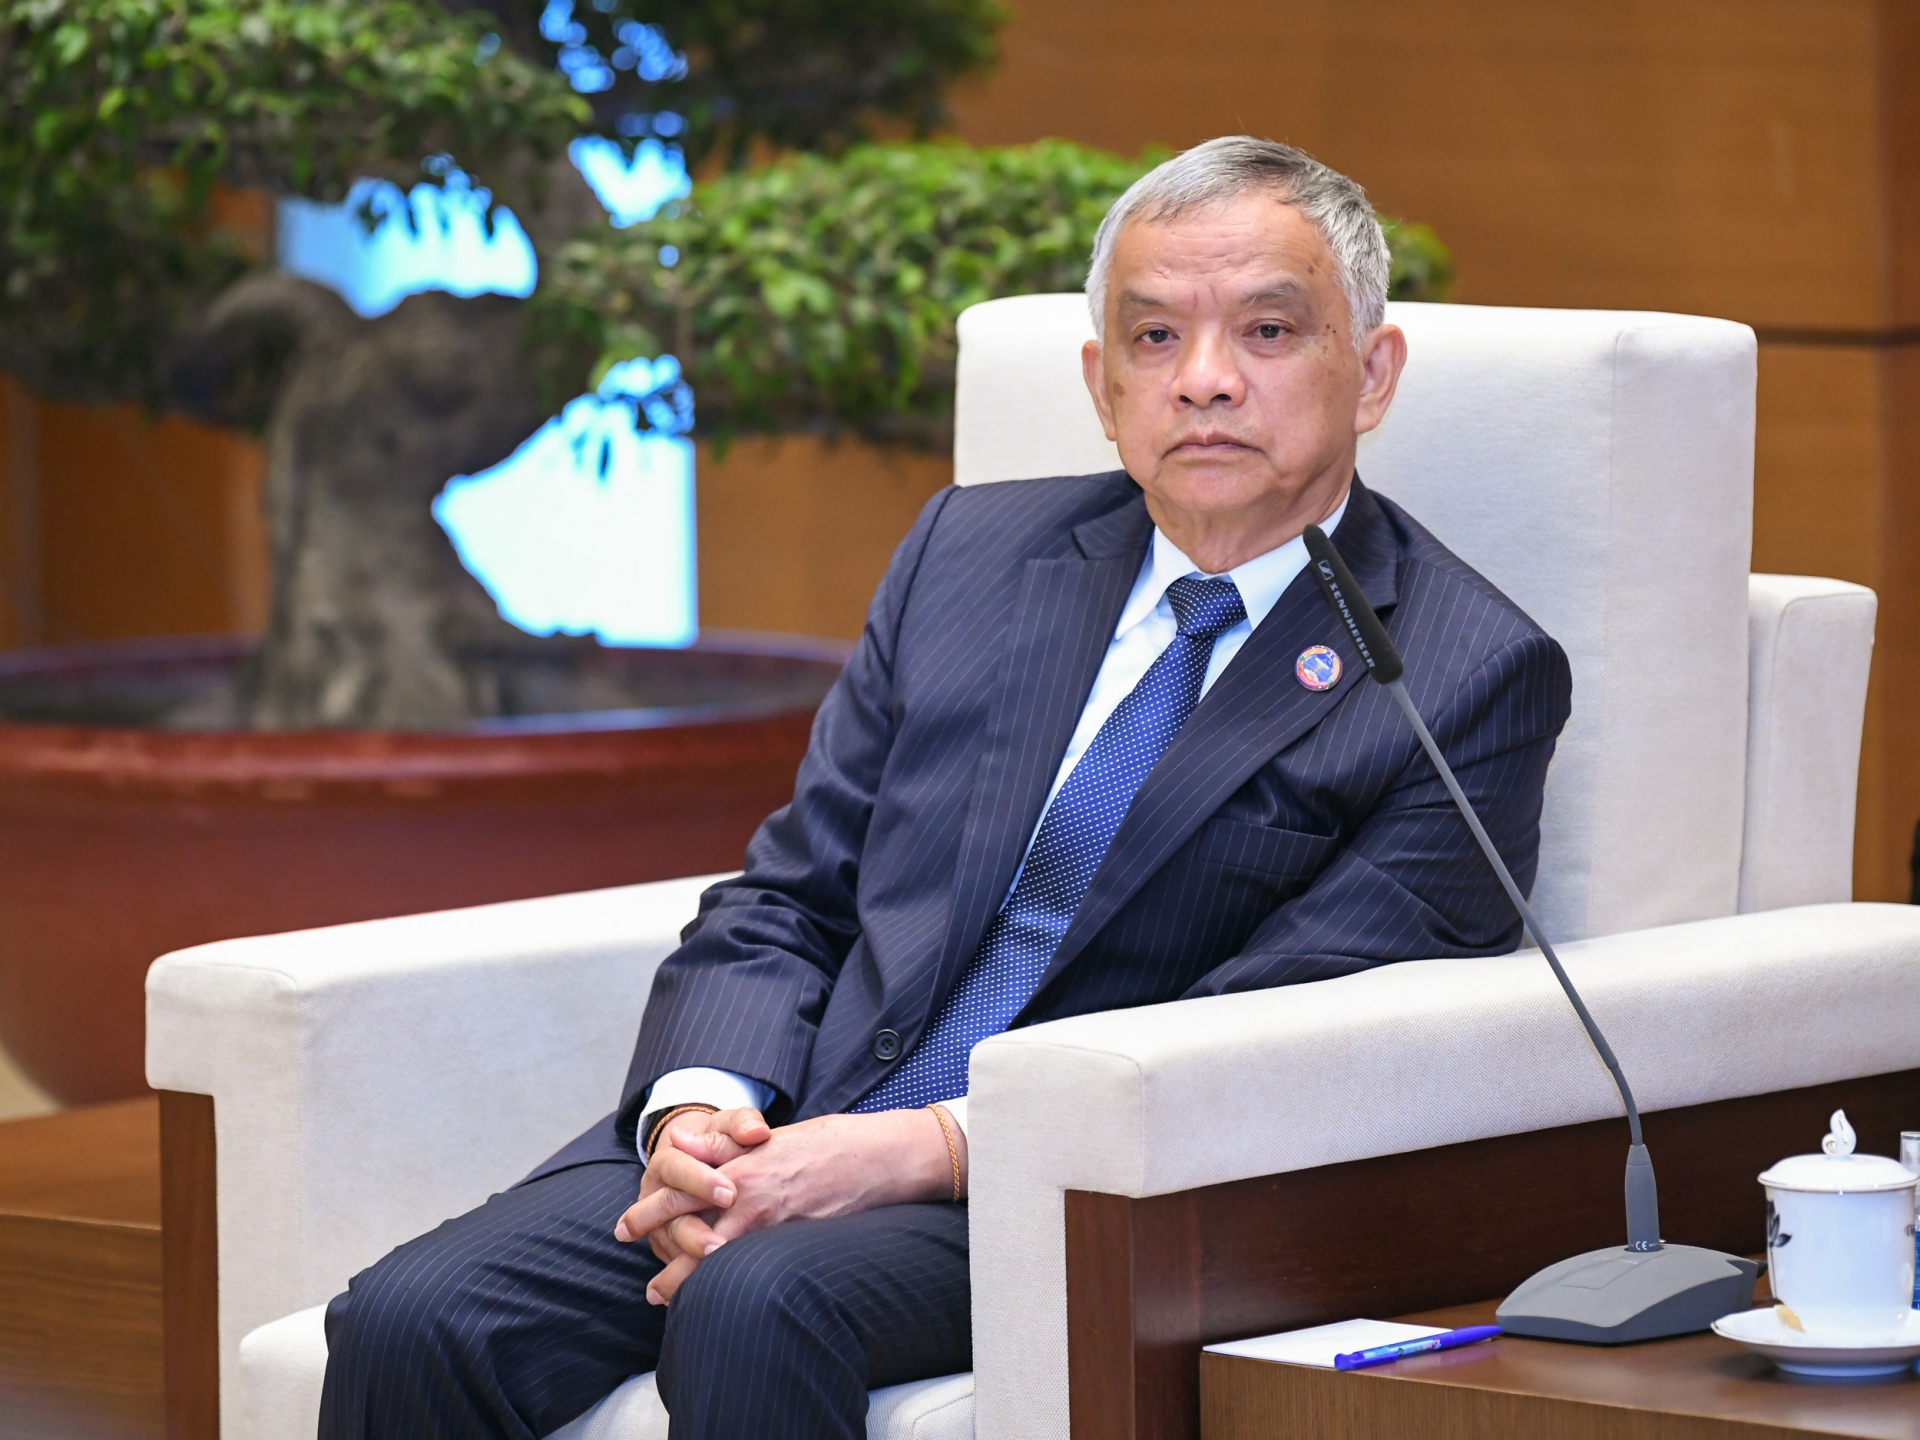 老挝国会副主席、老挝和平与团结委员会主席宋玛·奔舍那(Sommad Pholsena)。